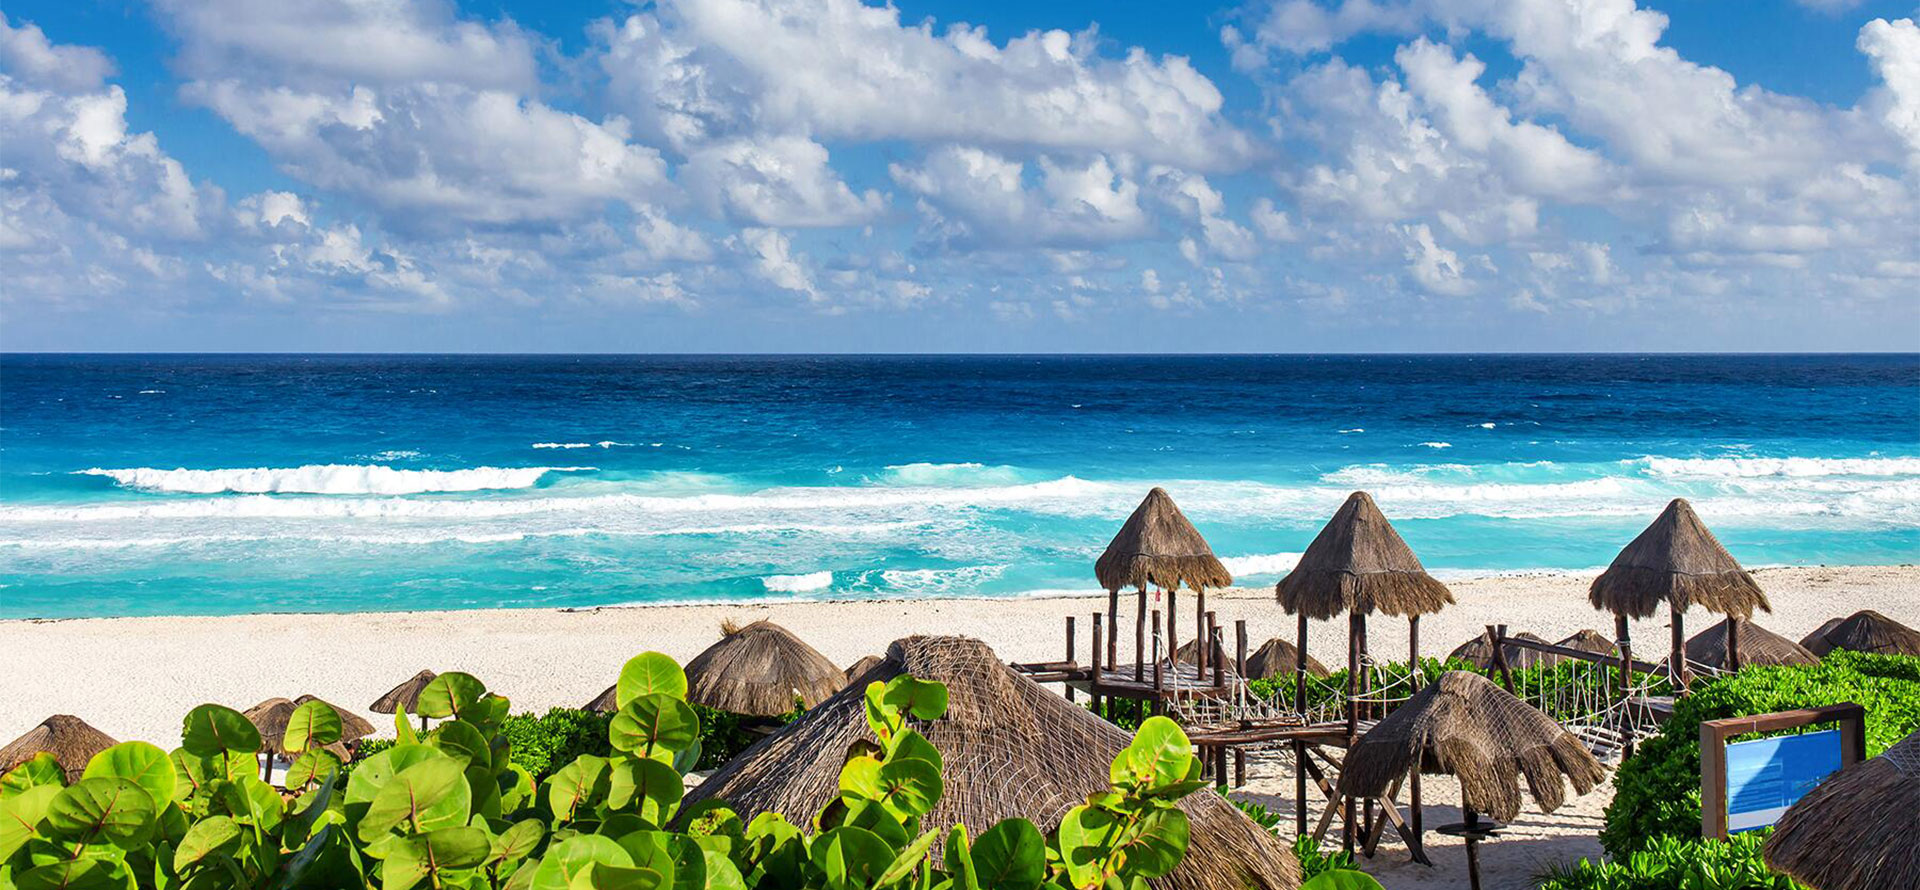 Resort beach in Cancun.